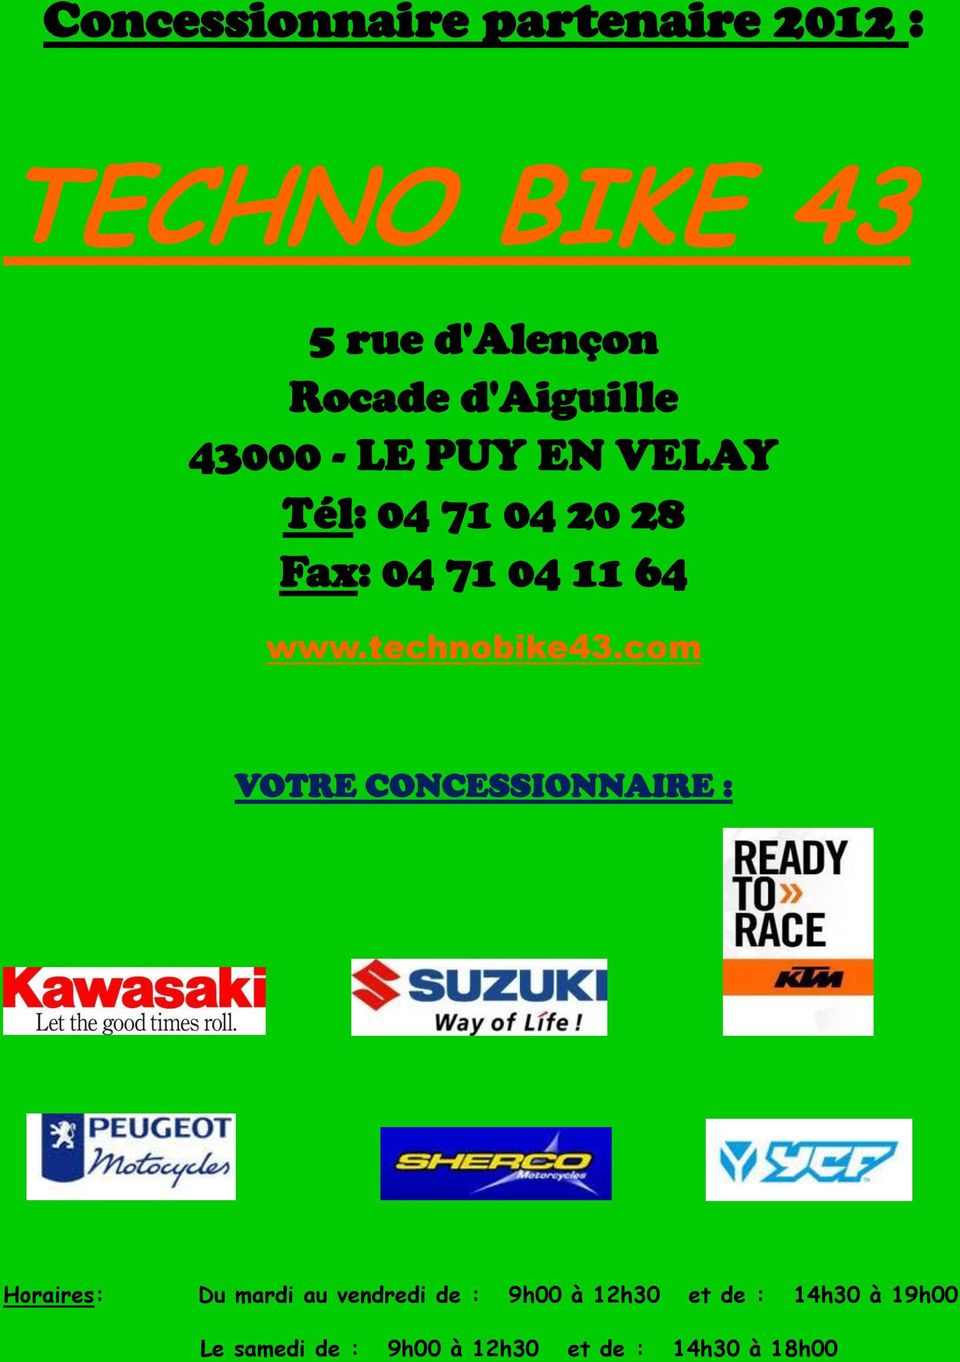 www.technobike43.